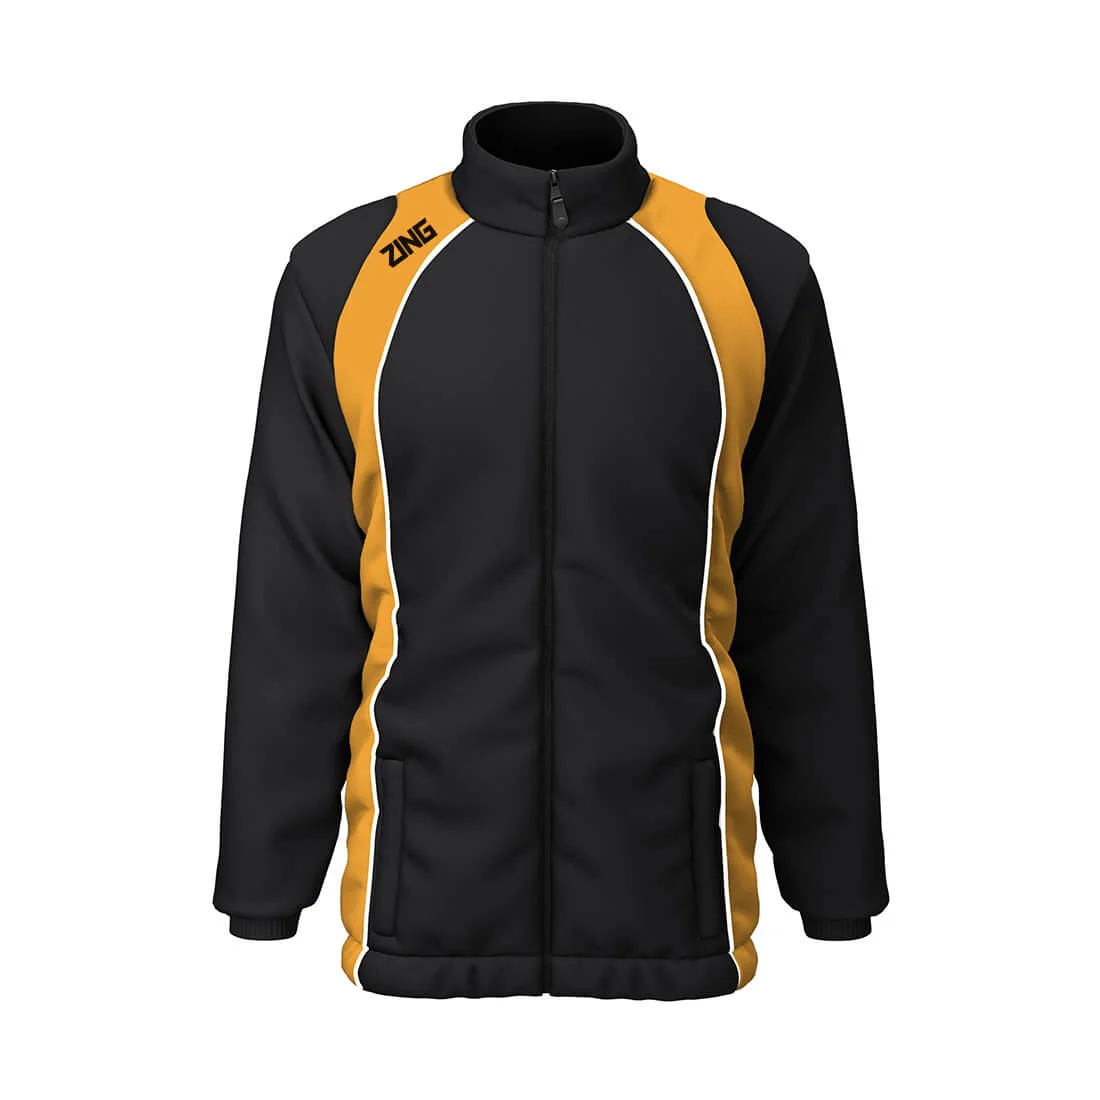 ZING Sportswear Showerproof Jacket | Training Kit and Teamwear - Front